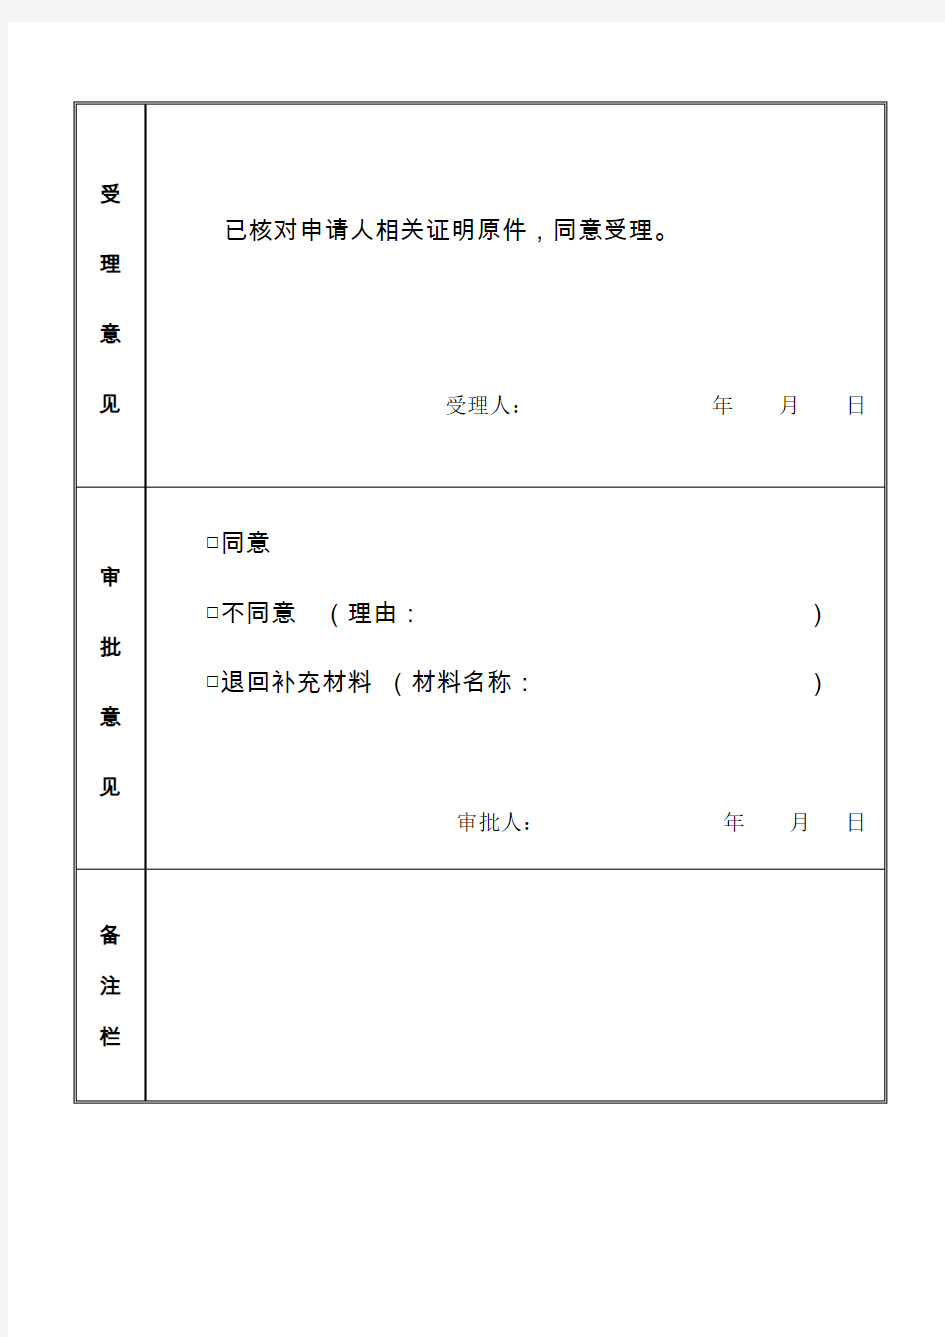 台湾居民来往大陆通行证申请表(样表)